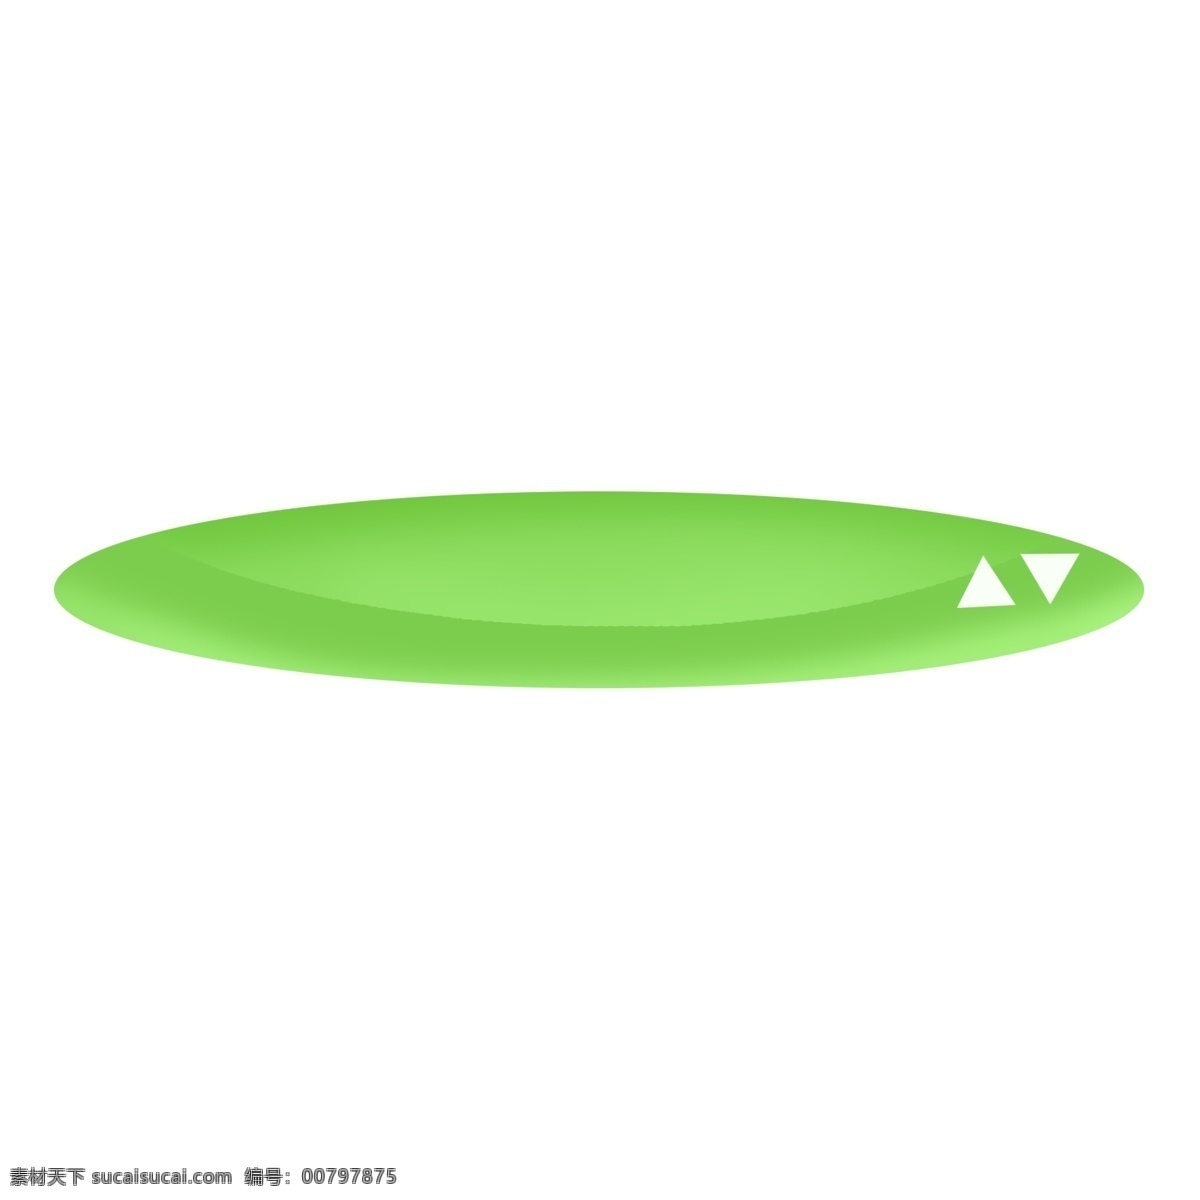 淡绿色 凸起 椭圆形 标题 框 标题框 绿色 椭圆 按钮 绿色标题框 绿色按钮 小清新 立体按钮